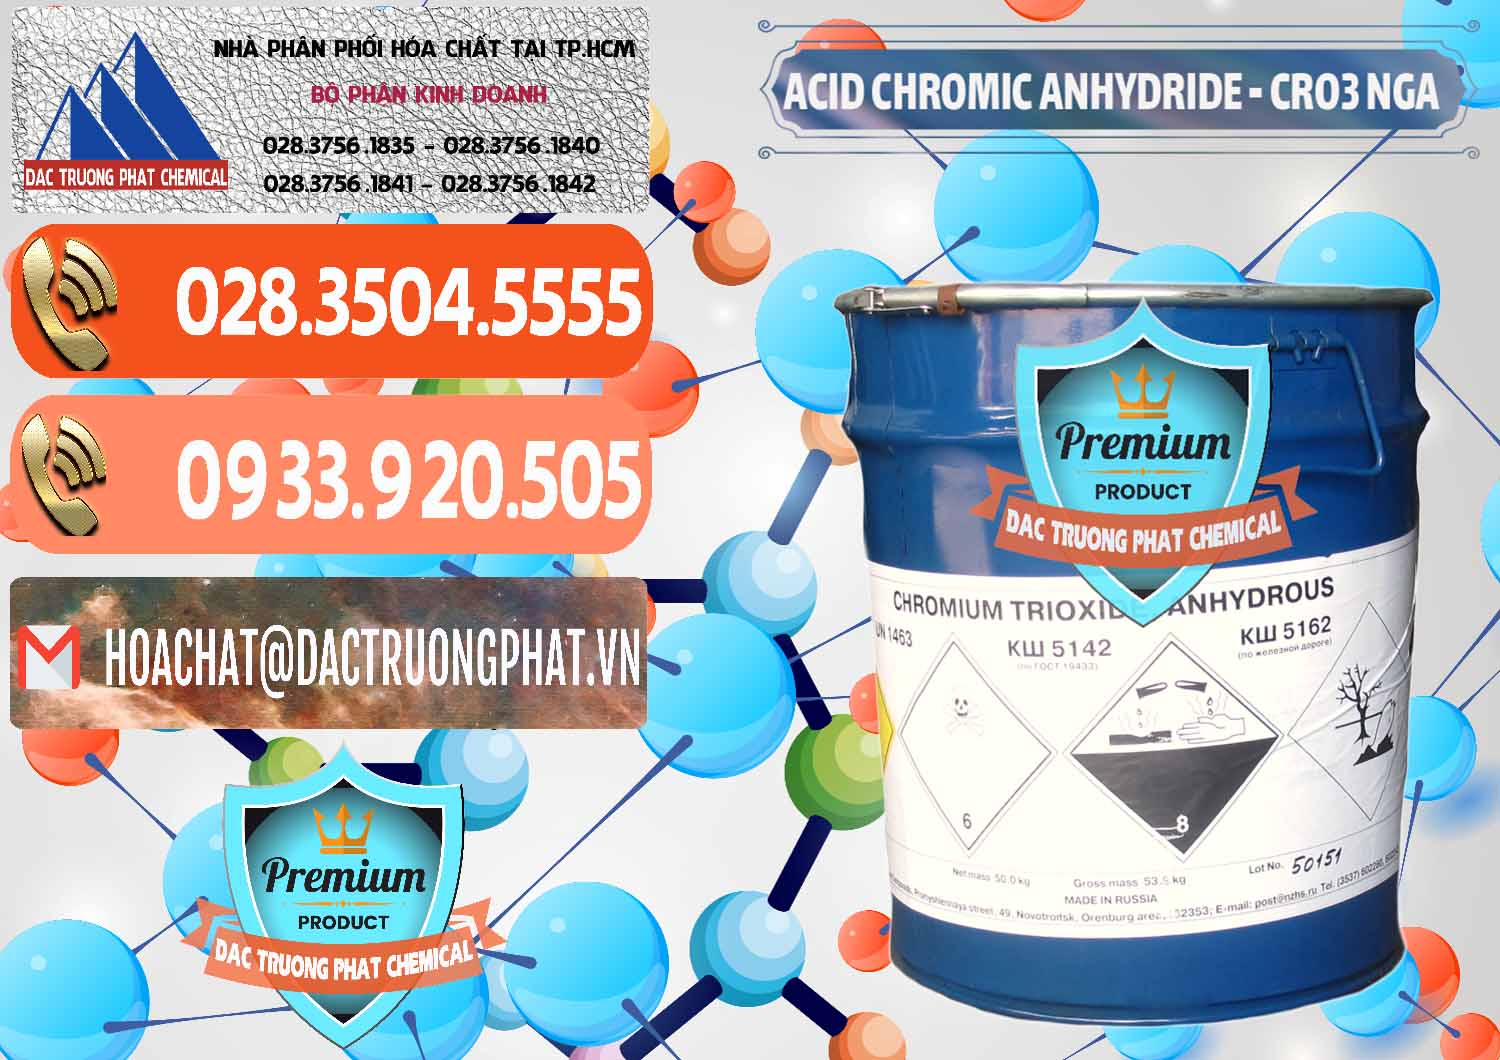 Công ty chuyên bán ( cung ứng ) Acid Chromic Anhydride - Cromic CRO3 Nga Russia - 0006 - Chuyên cung ứng và phân phối hóa chất tại TP.HCM - hoachatmientay.com